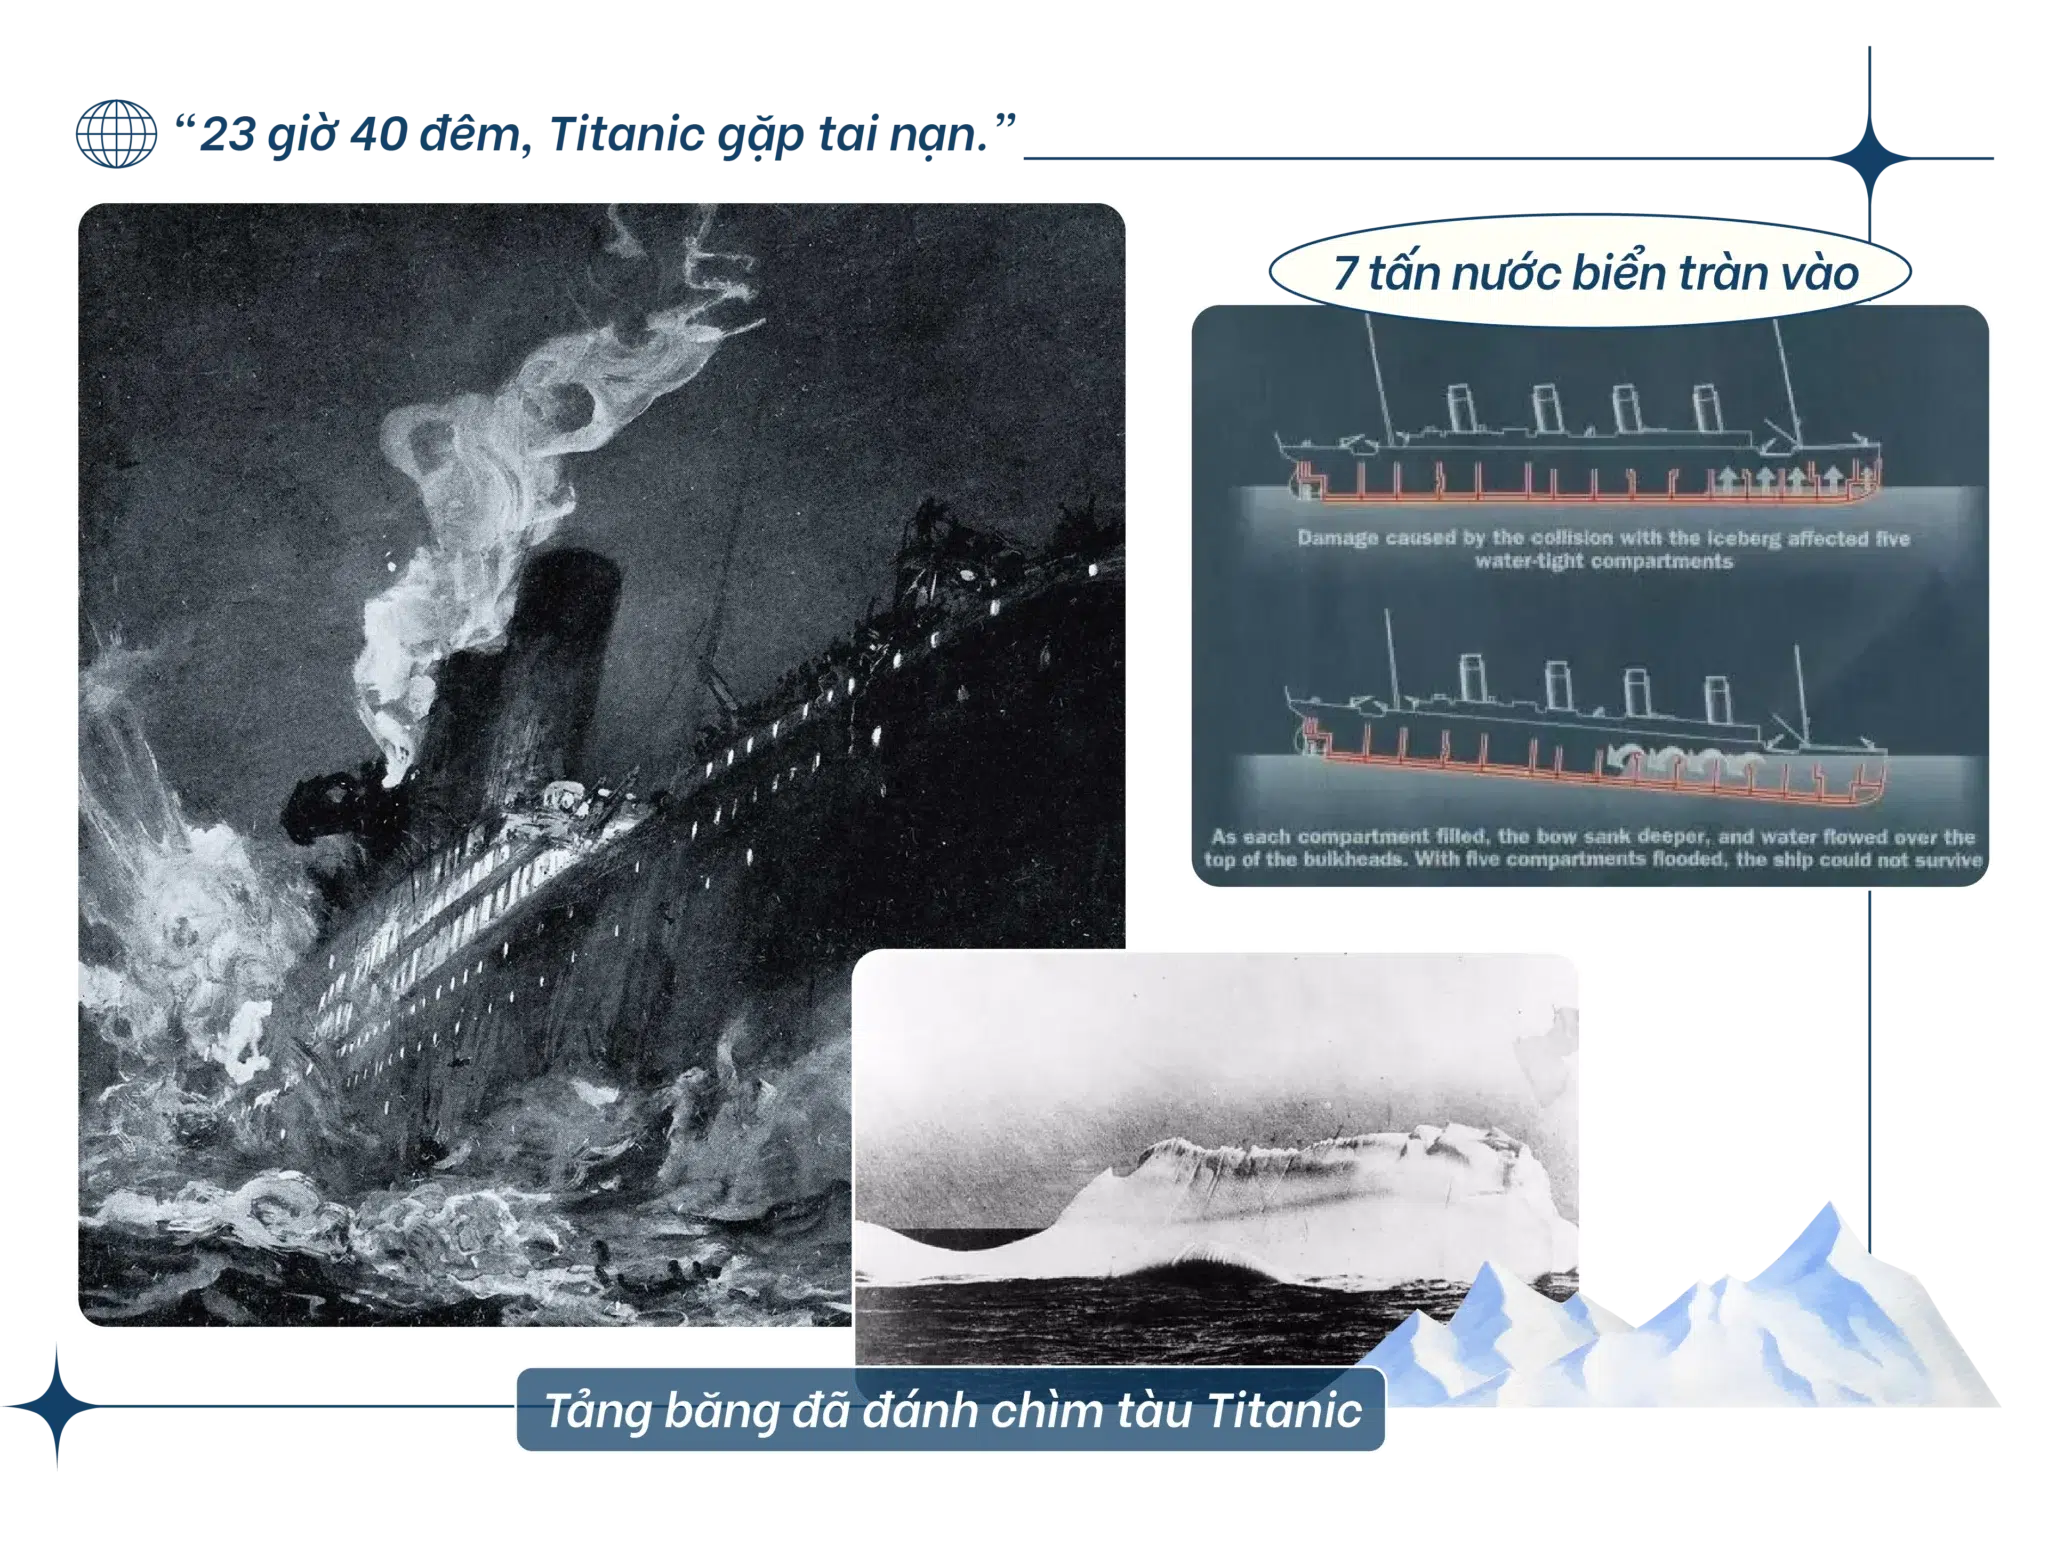 Titanic gặp tai nạn